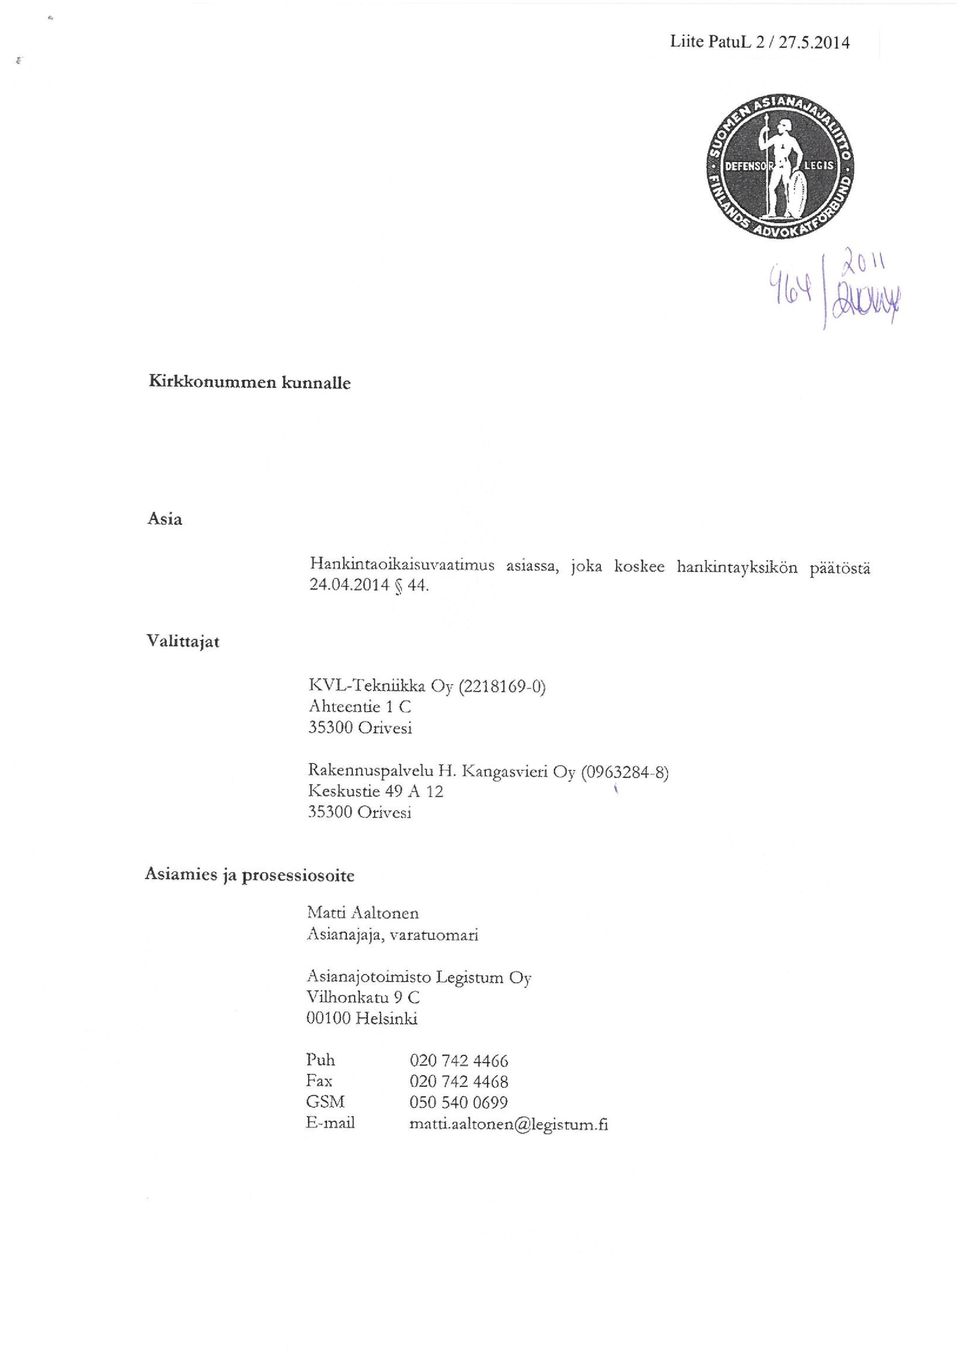 Valittajat KVL-Tekniikka Oy (2218169-0) Ahteentie l C 35300 Orivesi Rakennuspalvelu H.